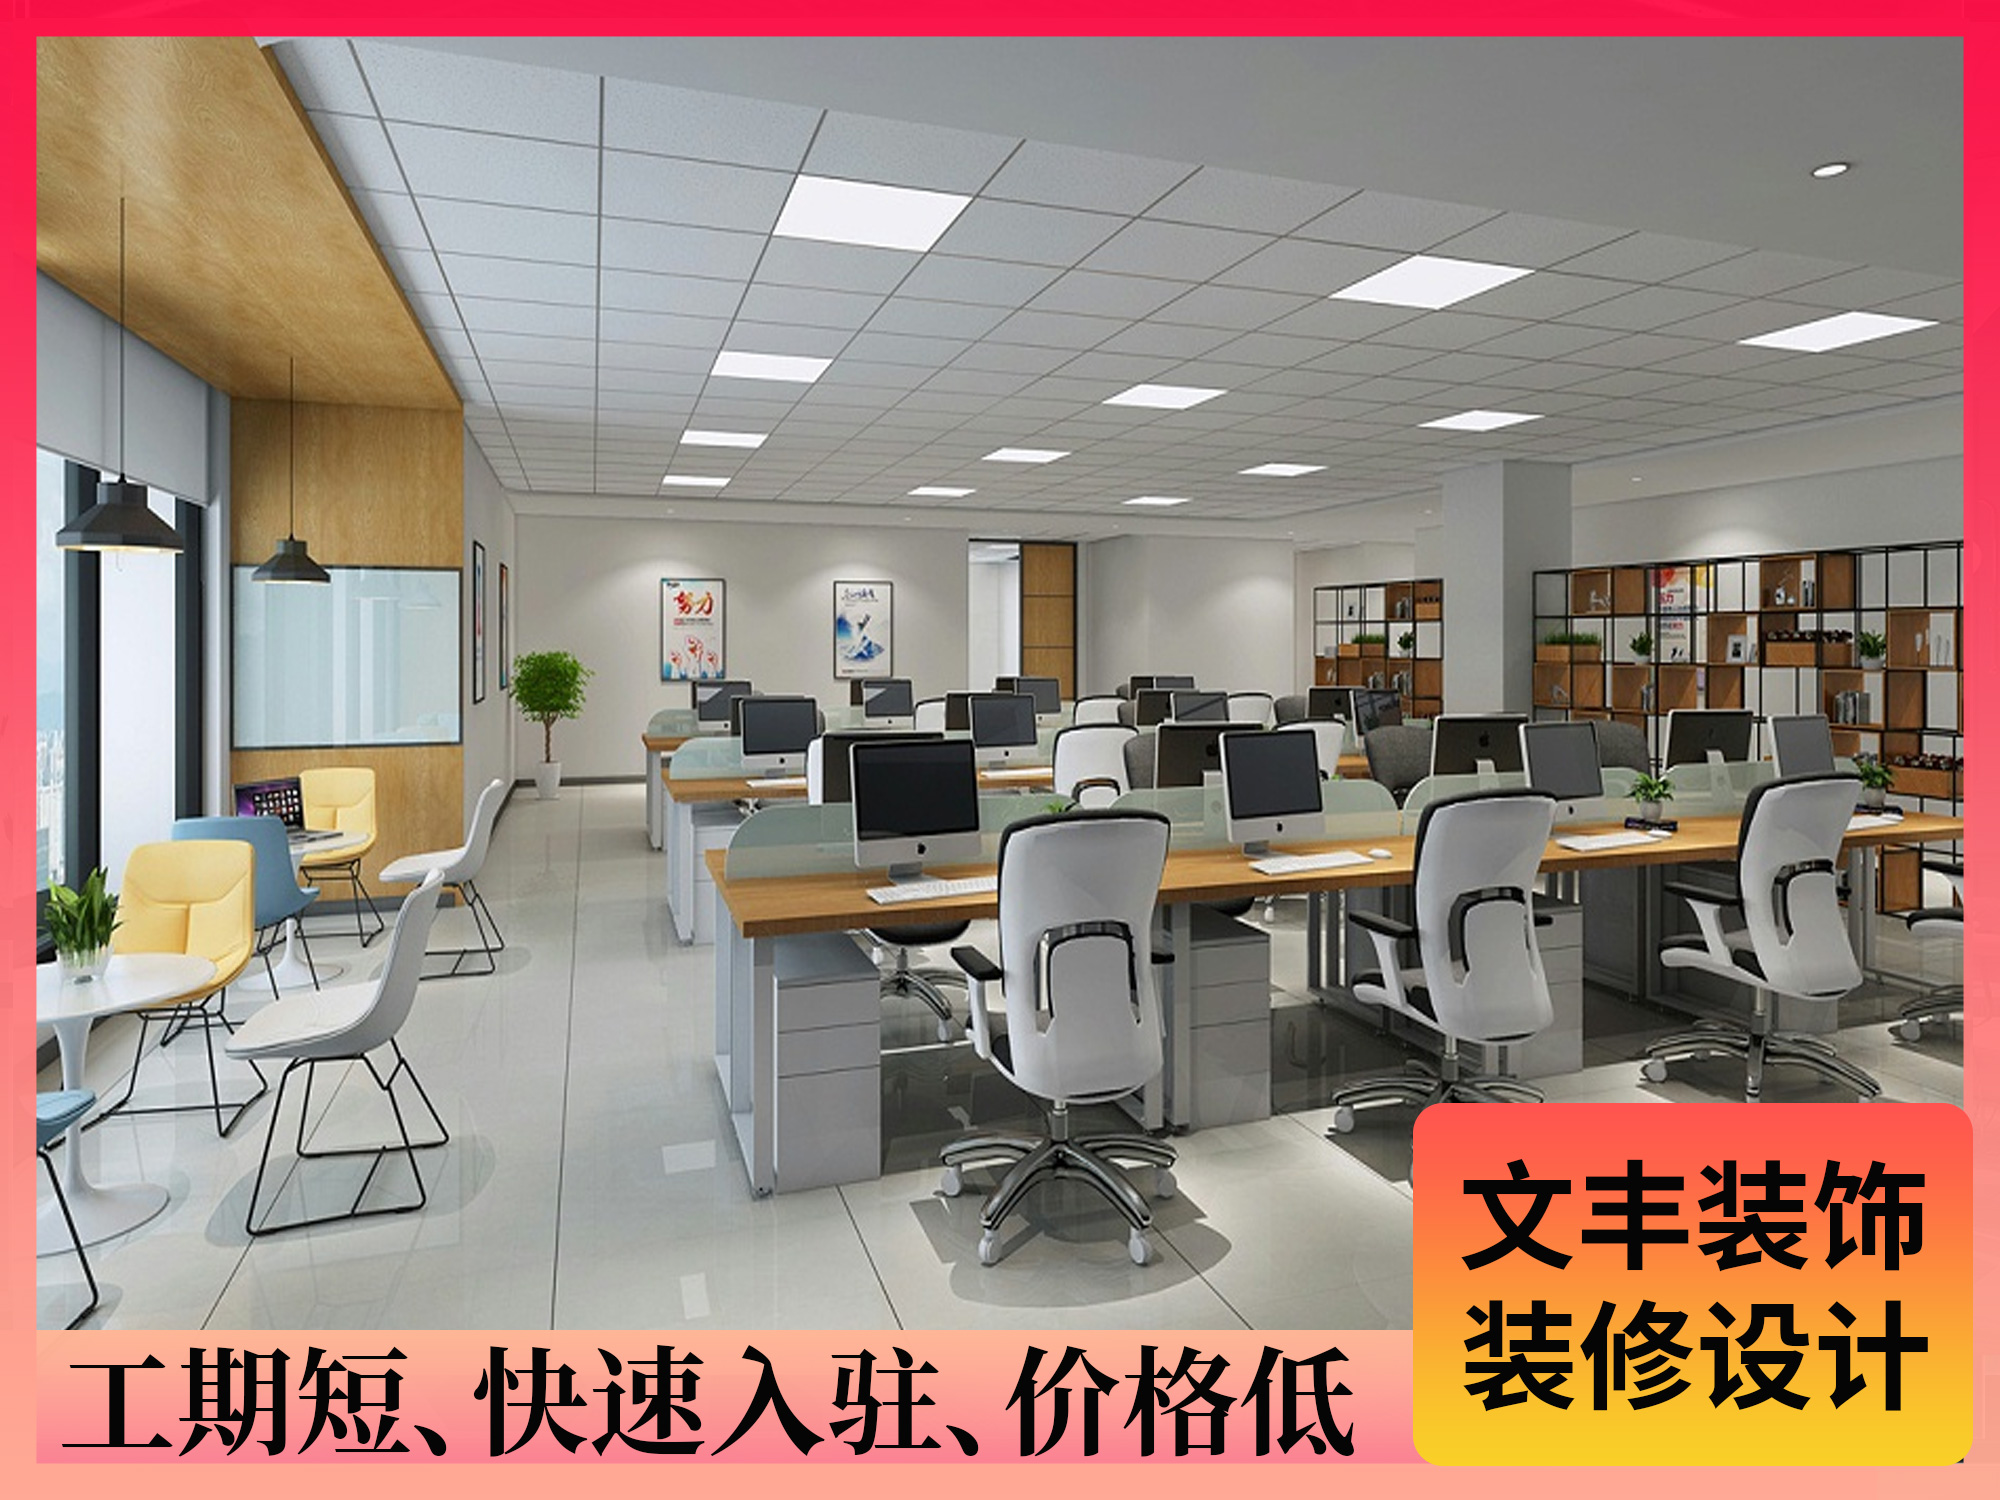 【比邦科技】福田办公室装修设计-明亮自然风-文丰装饰公司